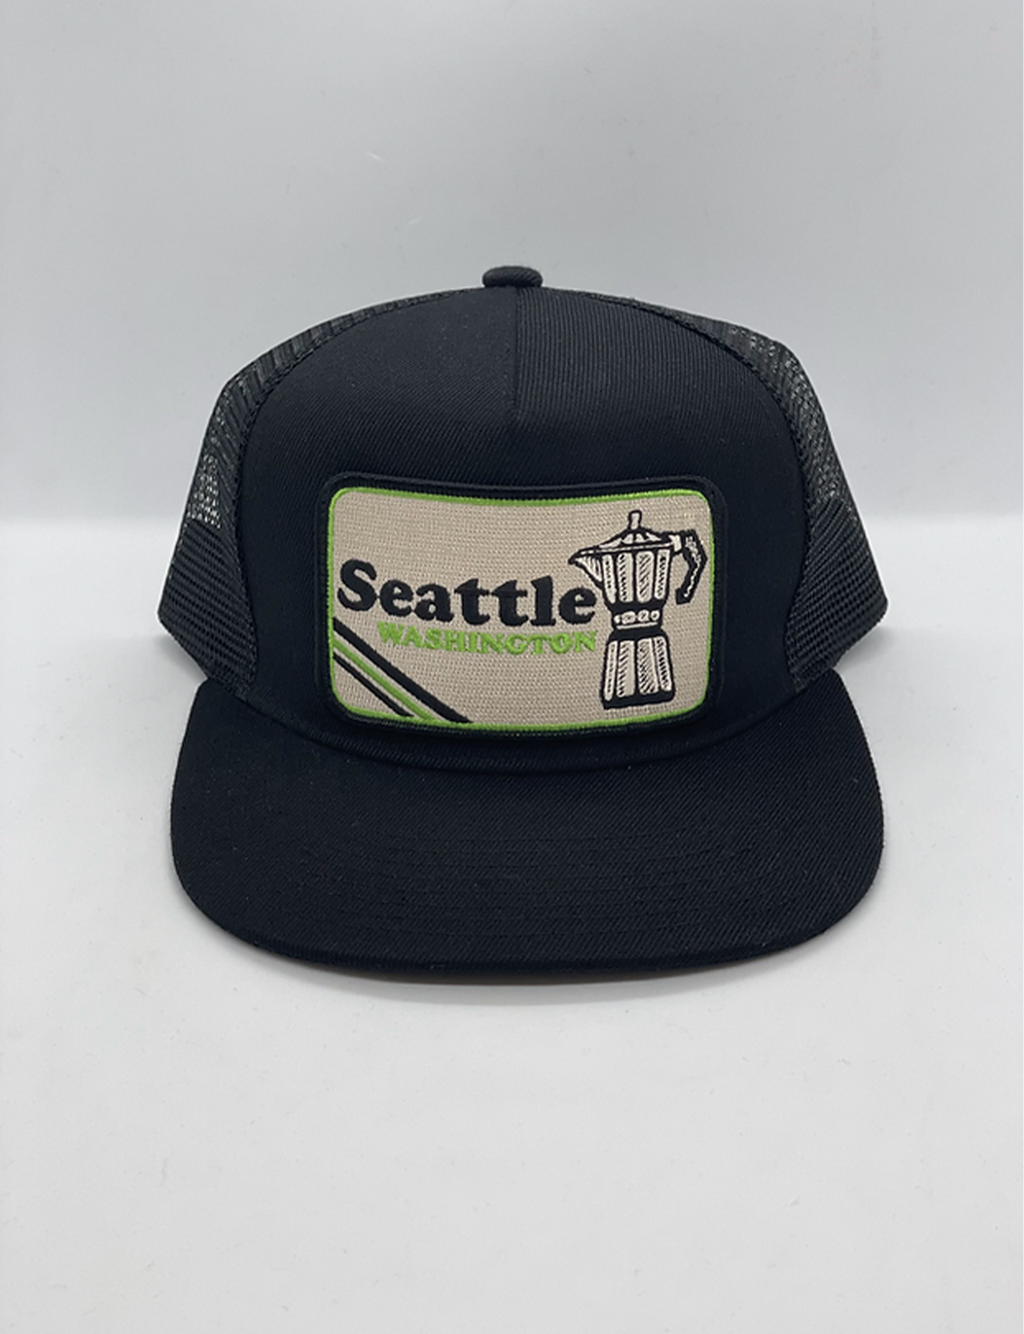 Trucker Hat, Seattle